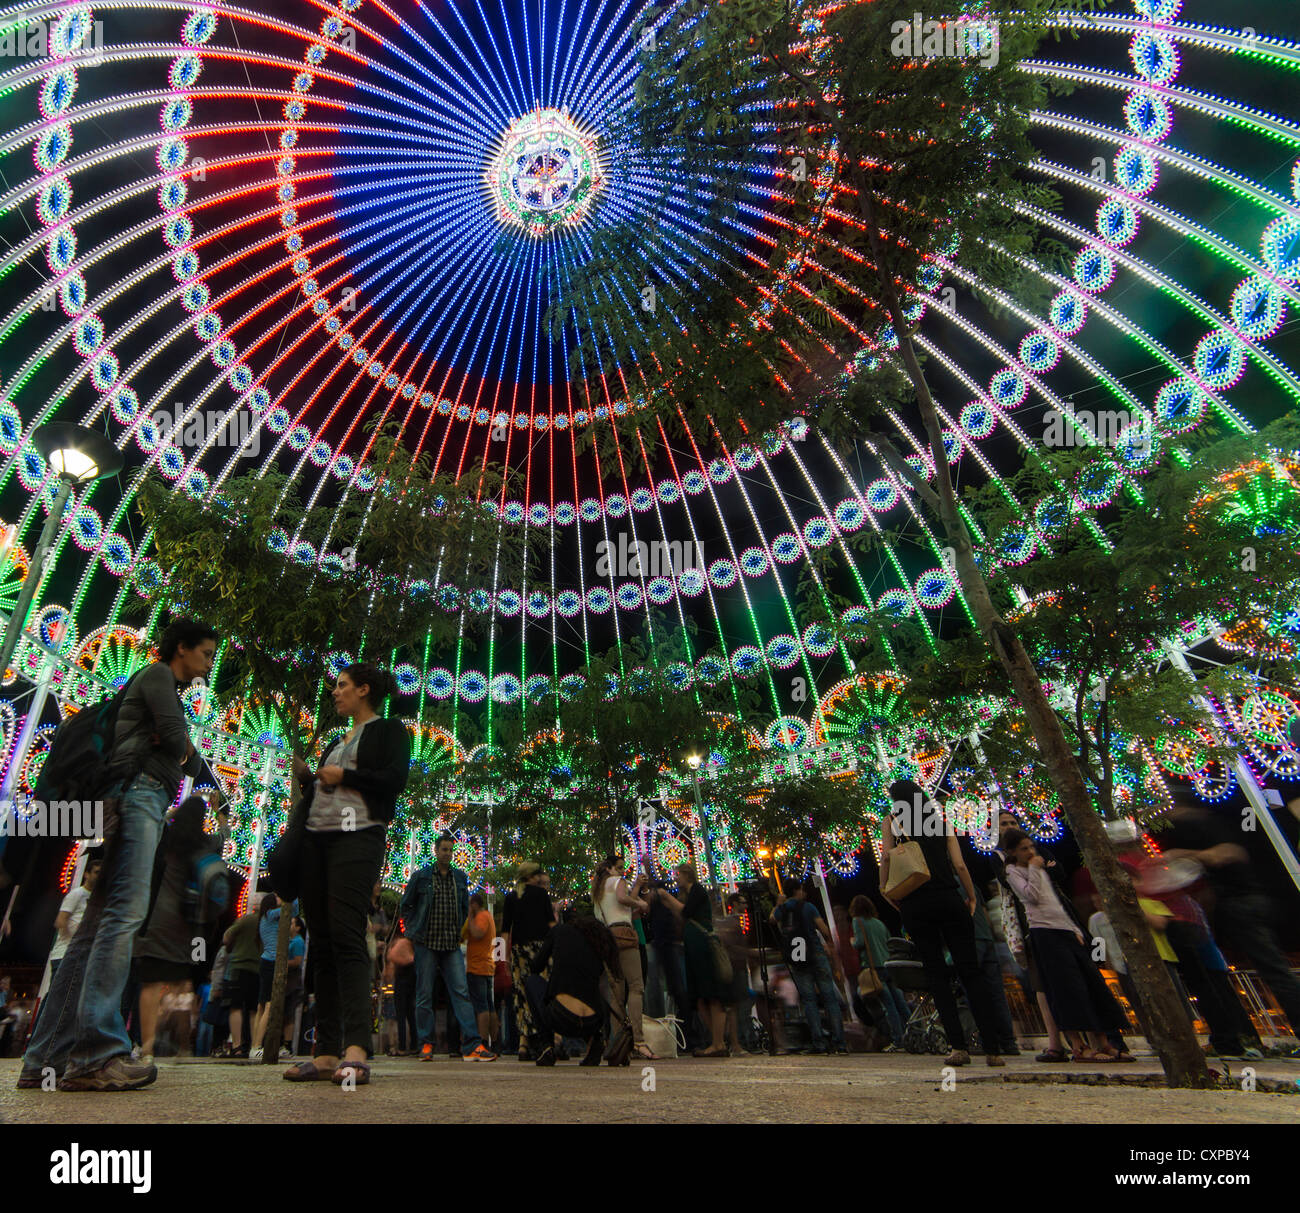 Jérusalem, Israël. Les gens à l'intérieur Luminaria de Cagna's 'Copule' sculpture de lumière à la fête des Lumières 2012. Banque D'Images